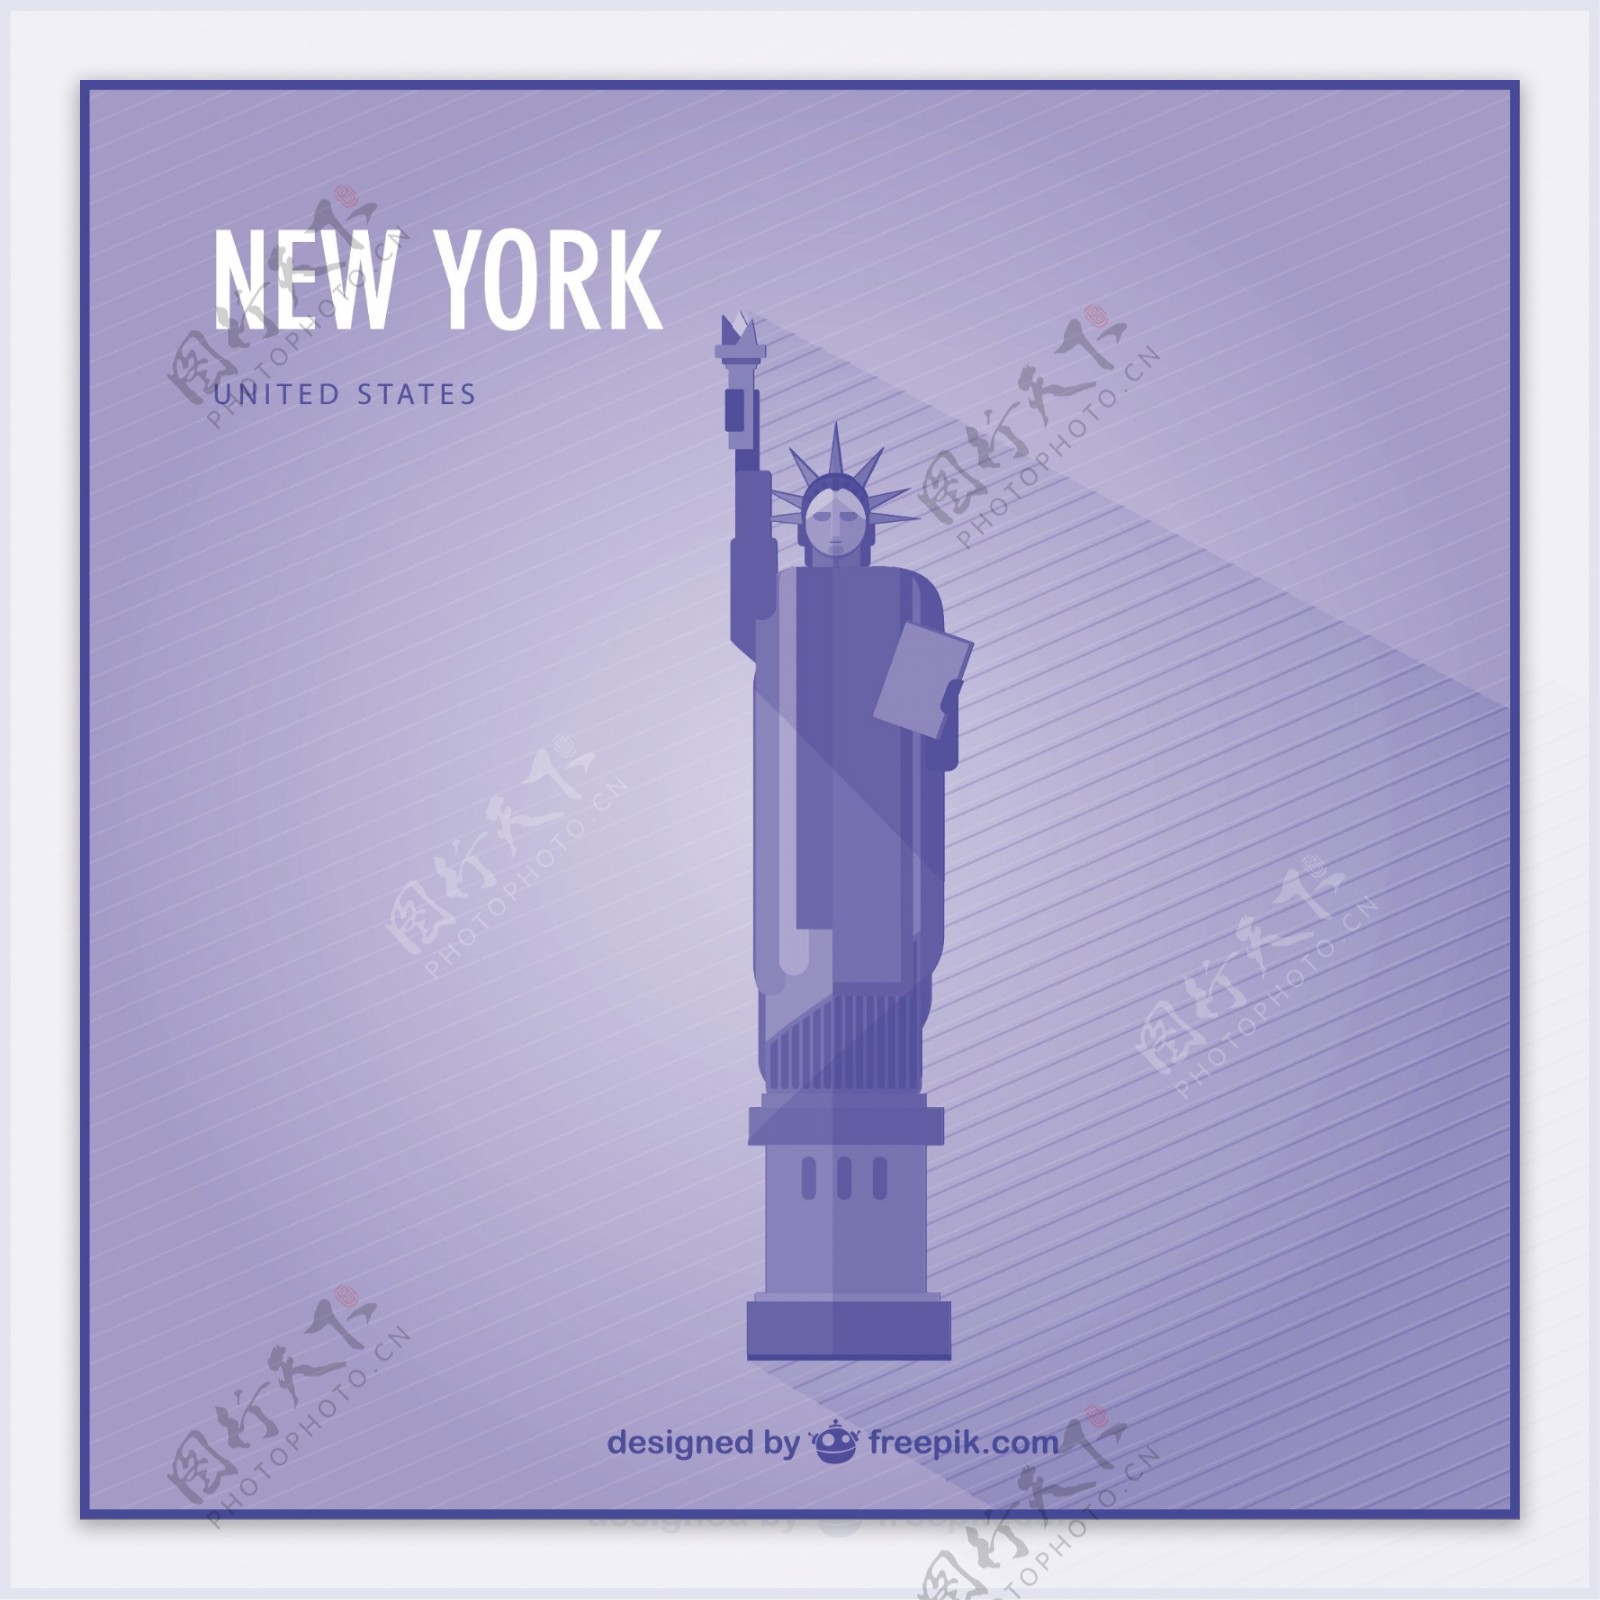 纽约自由女神像